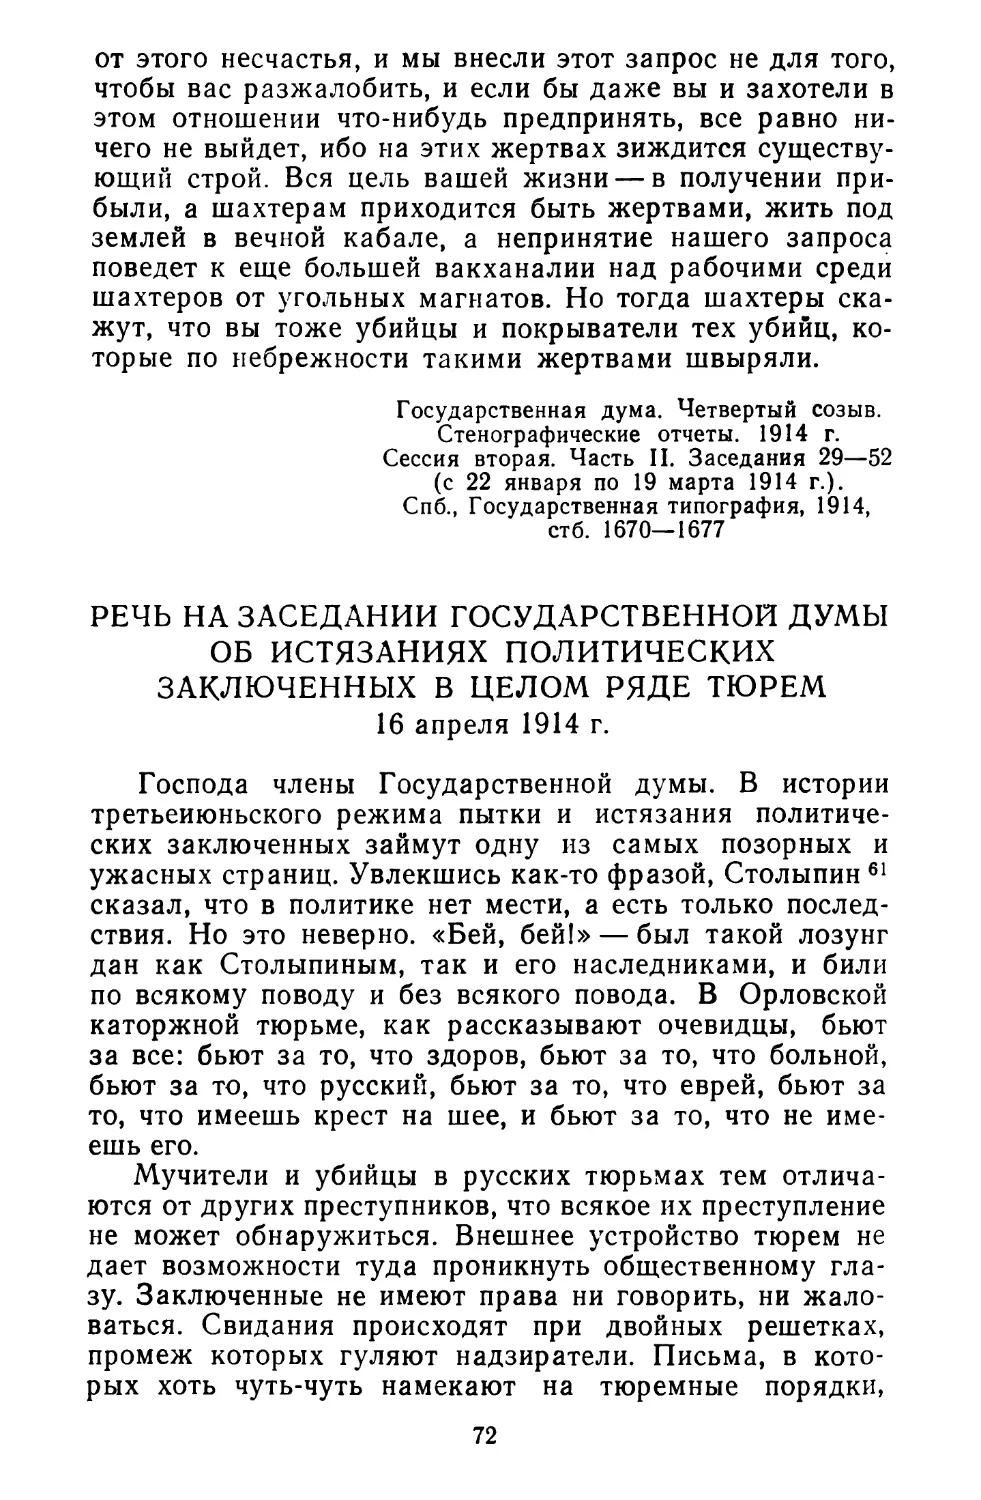 Речь на заседании Государственной думы об истязаниях политических заключенных в целом ряде тюрем. 16 апреля 1914 г.